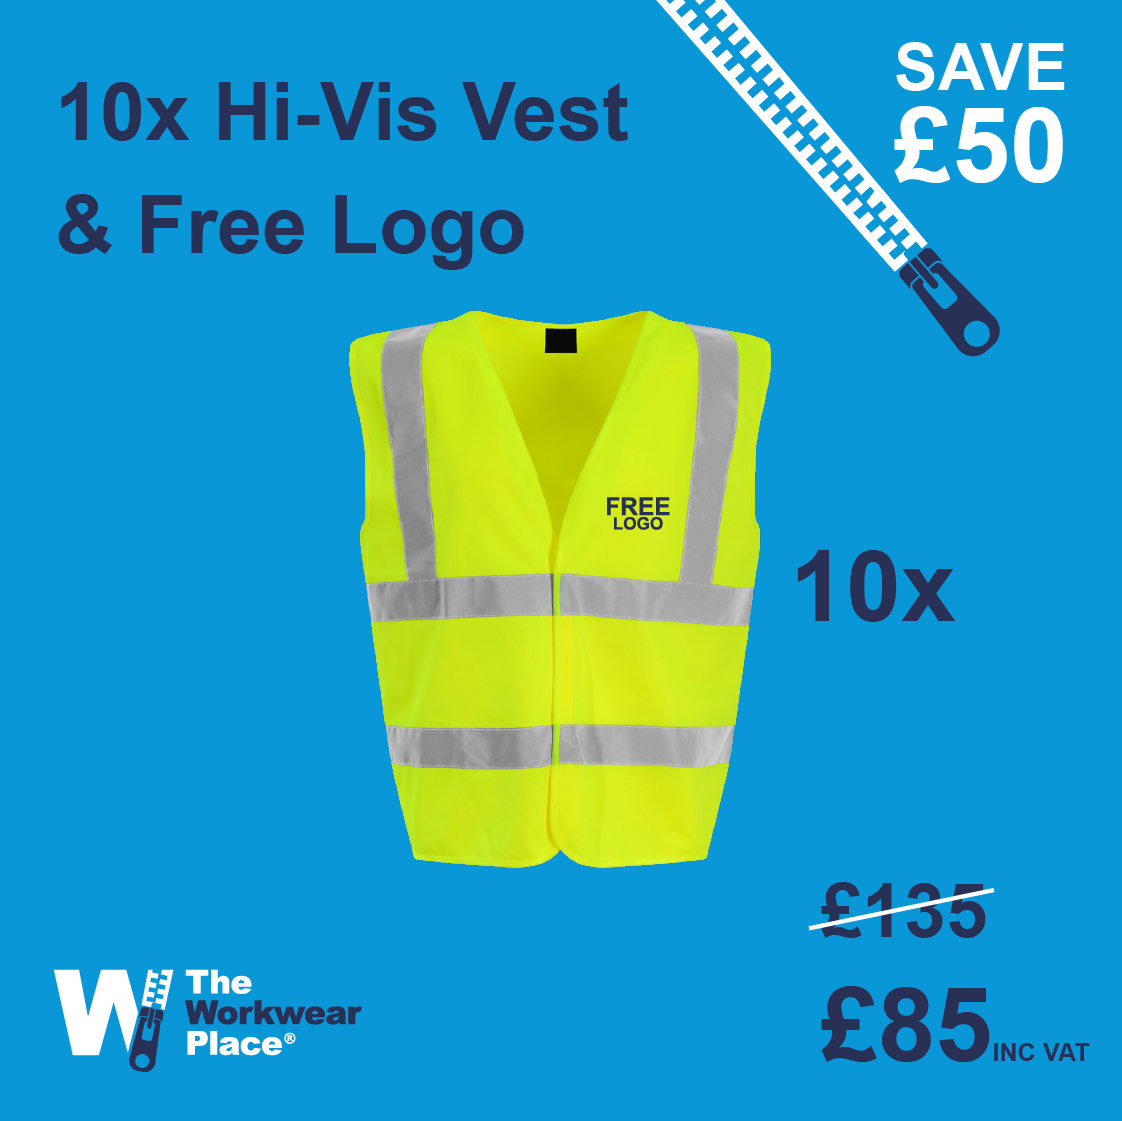 10x Hi-Vis Vest & Free Logo Deal